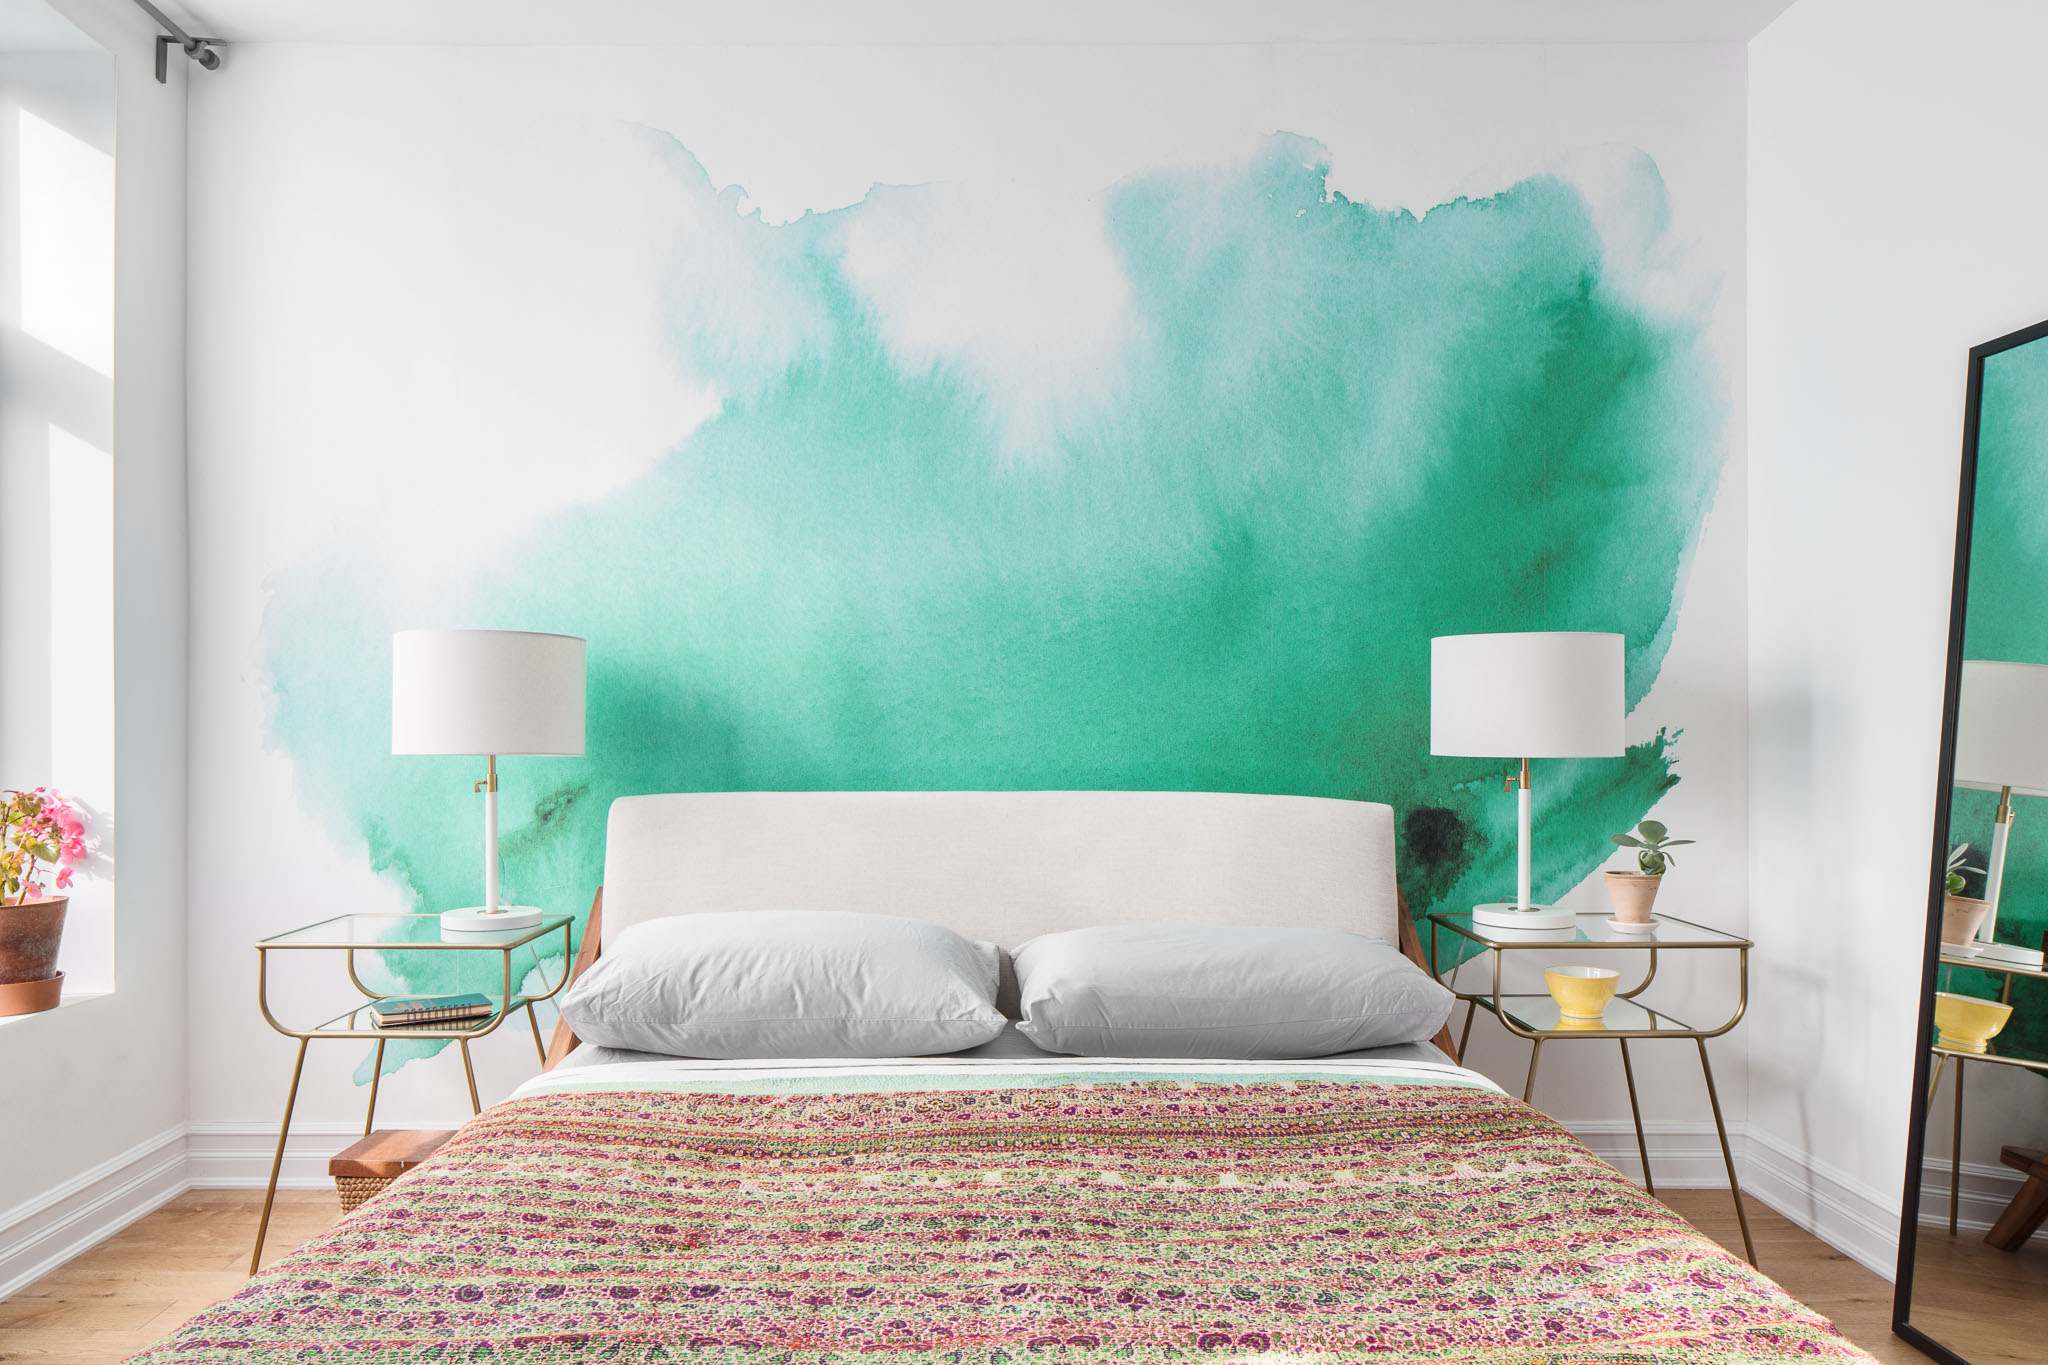 Designer Picks The Best Sources For Wallpaper Homepolish